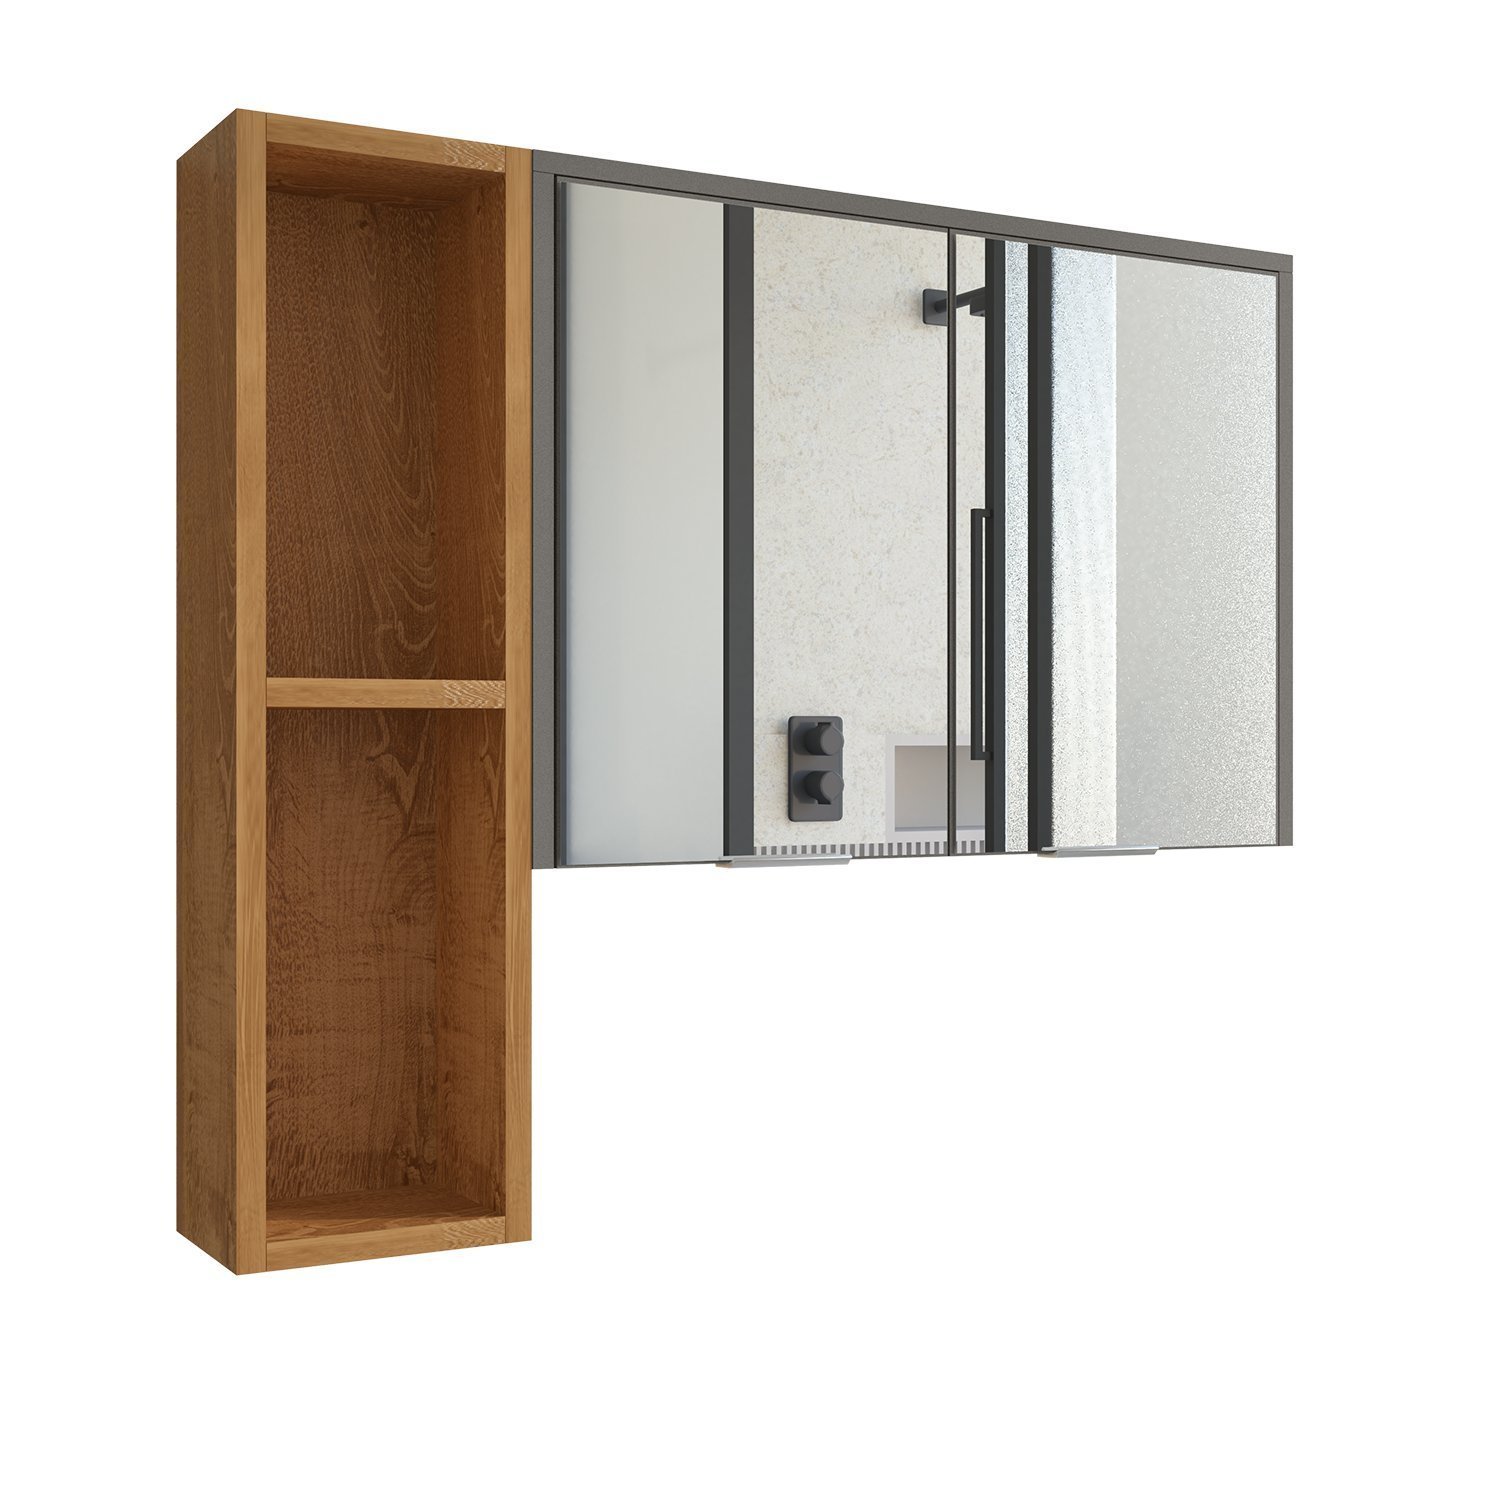 Espelheira Para Banheiro Ibiza 2 Portas Com Espelho Nicho Multifuncional Puxador De Aluminio - 6